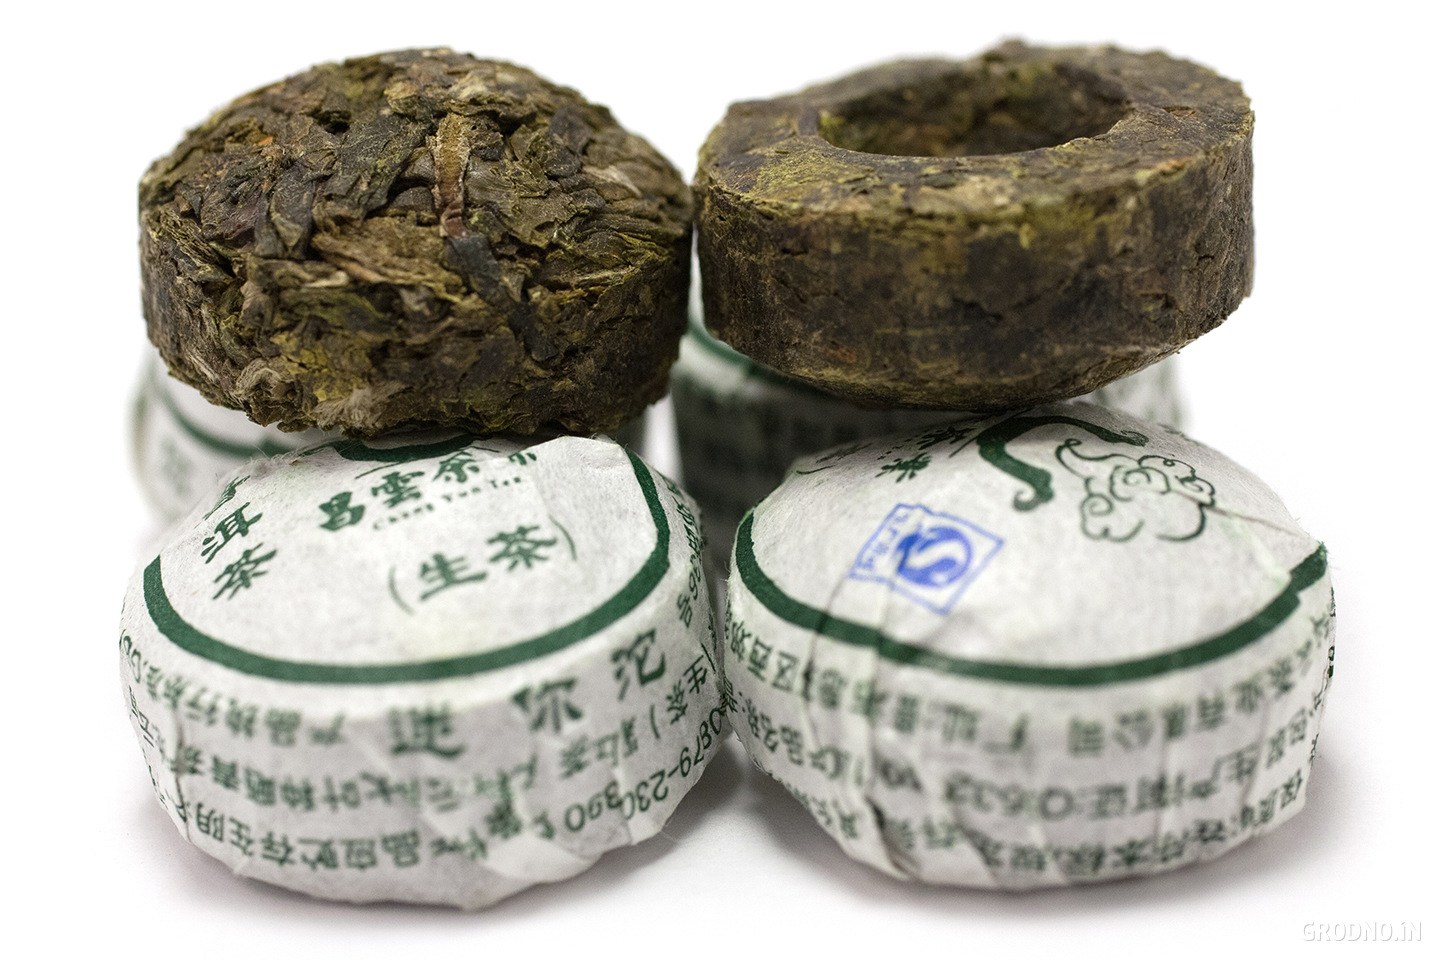 Чай китайский наркотик или нет спайсы как они выглядят